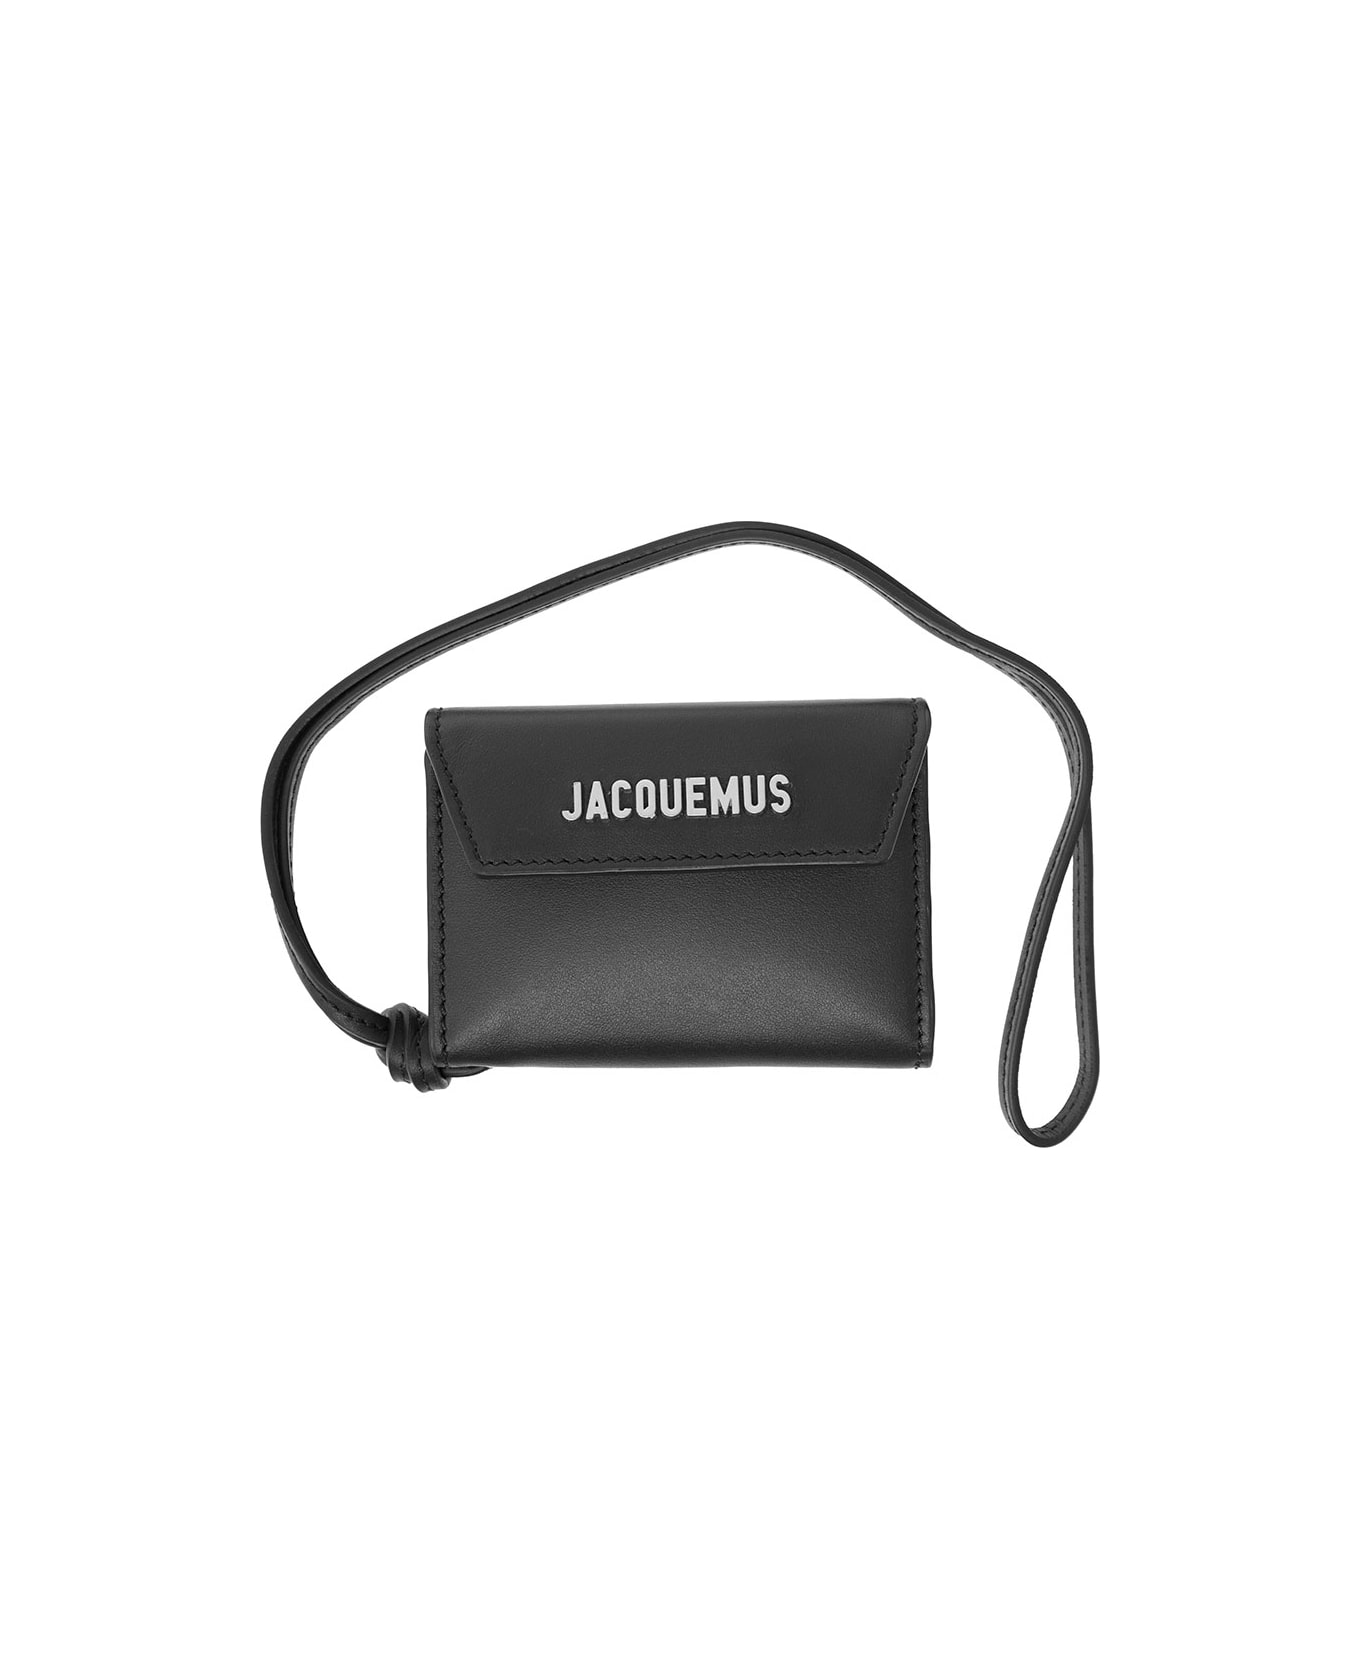 Jacquemus Le Porte Wallet - Black